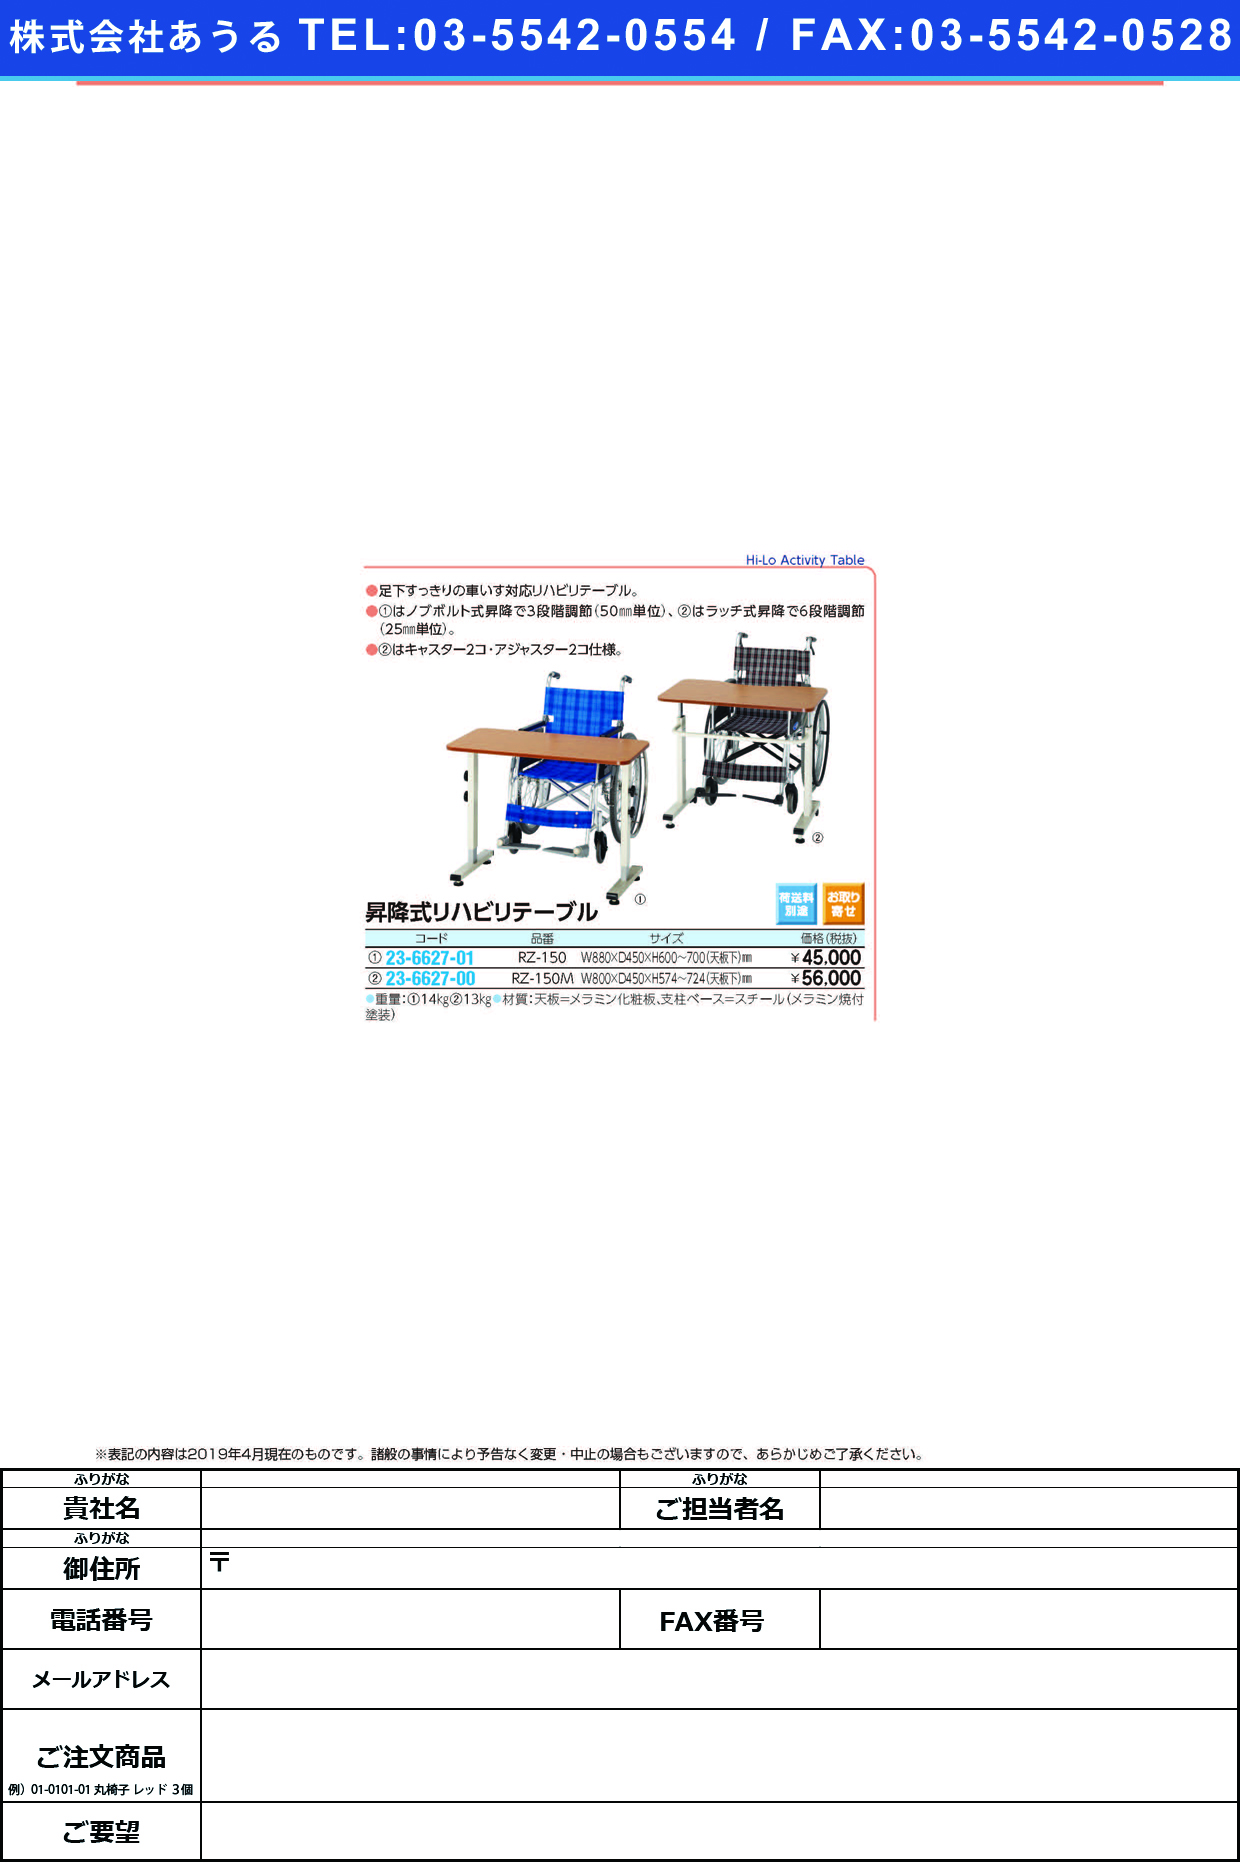 (23-6627-00)昇降式リハビリテーブル RZ-150M(W800XD450) ｼｮｳｺｳｼｷﾘﾊﾋﾞﾘﾃｰﾌﾞﾙ【1台単位】【2019年カタログ商品】